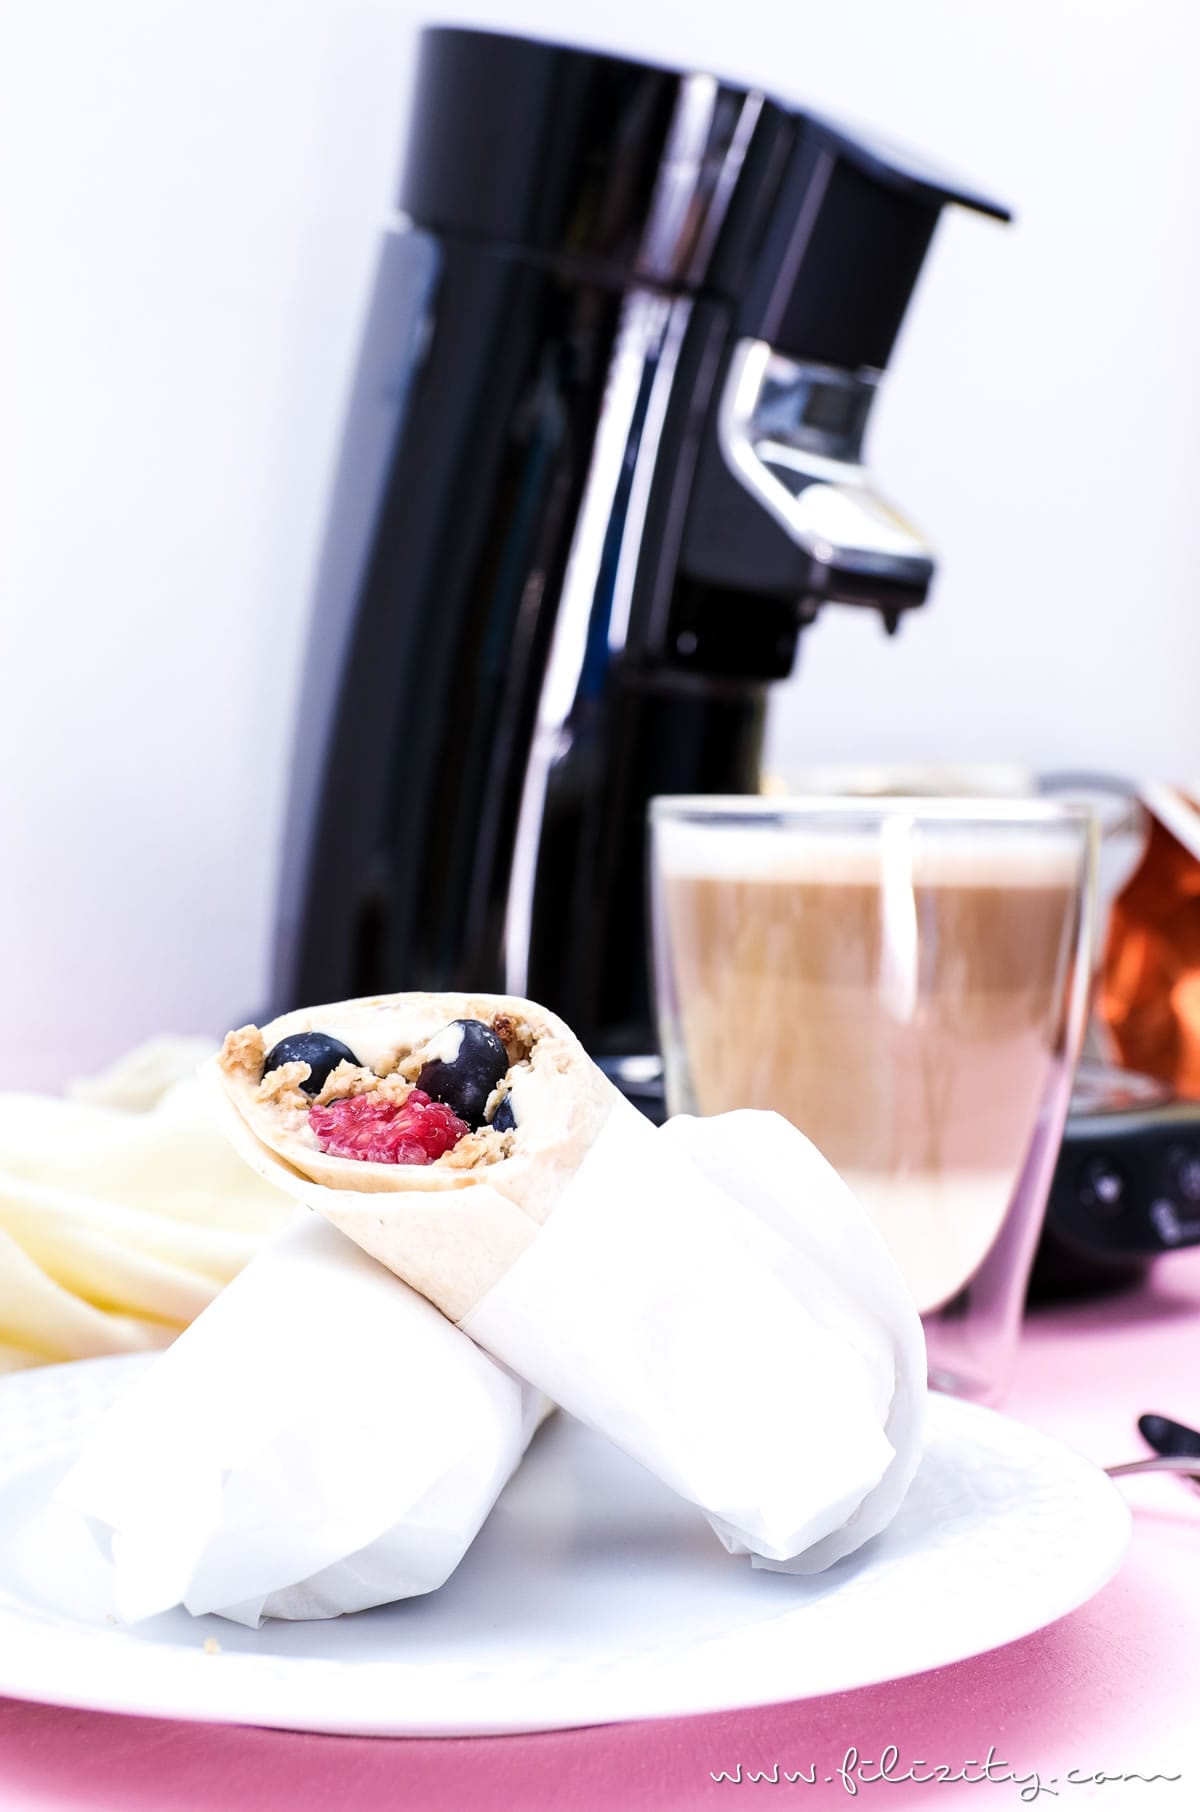 Rezept für Frühstücks-Wraps mit Kaffee-Quark und Beeren - Genussmomente mit SENSEO® + GEWINNSPIEL | Filizity.com | Food-Blog aus dem Rheinland #perfektinjederlage #senseo #lattemacchiato